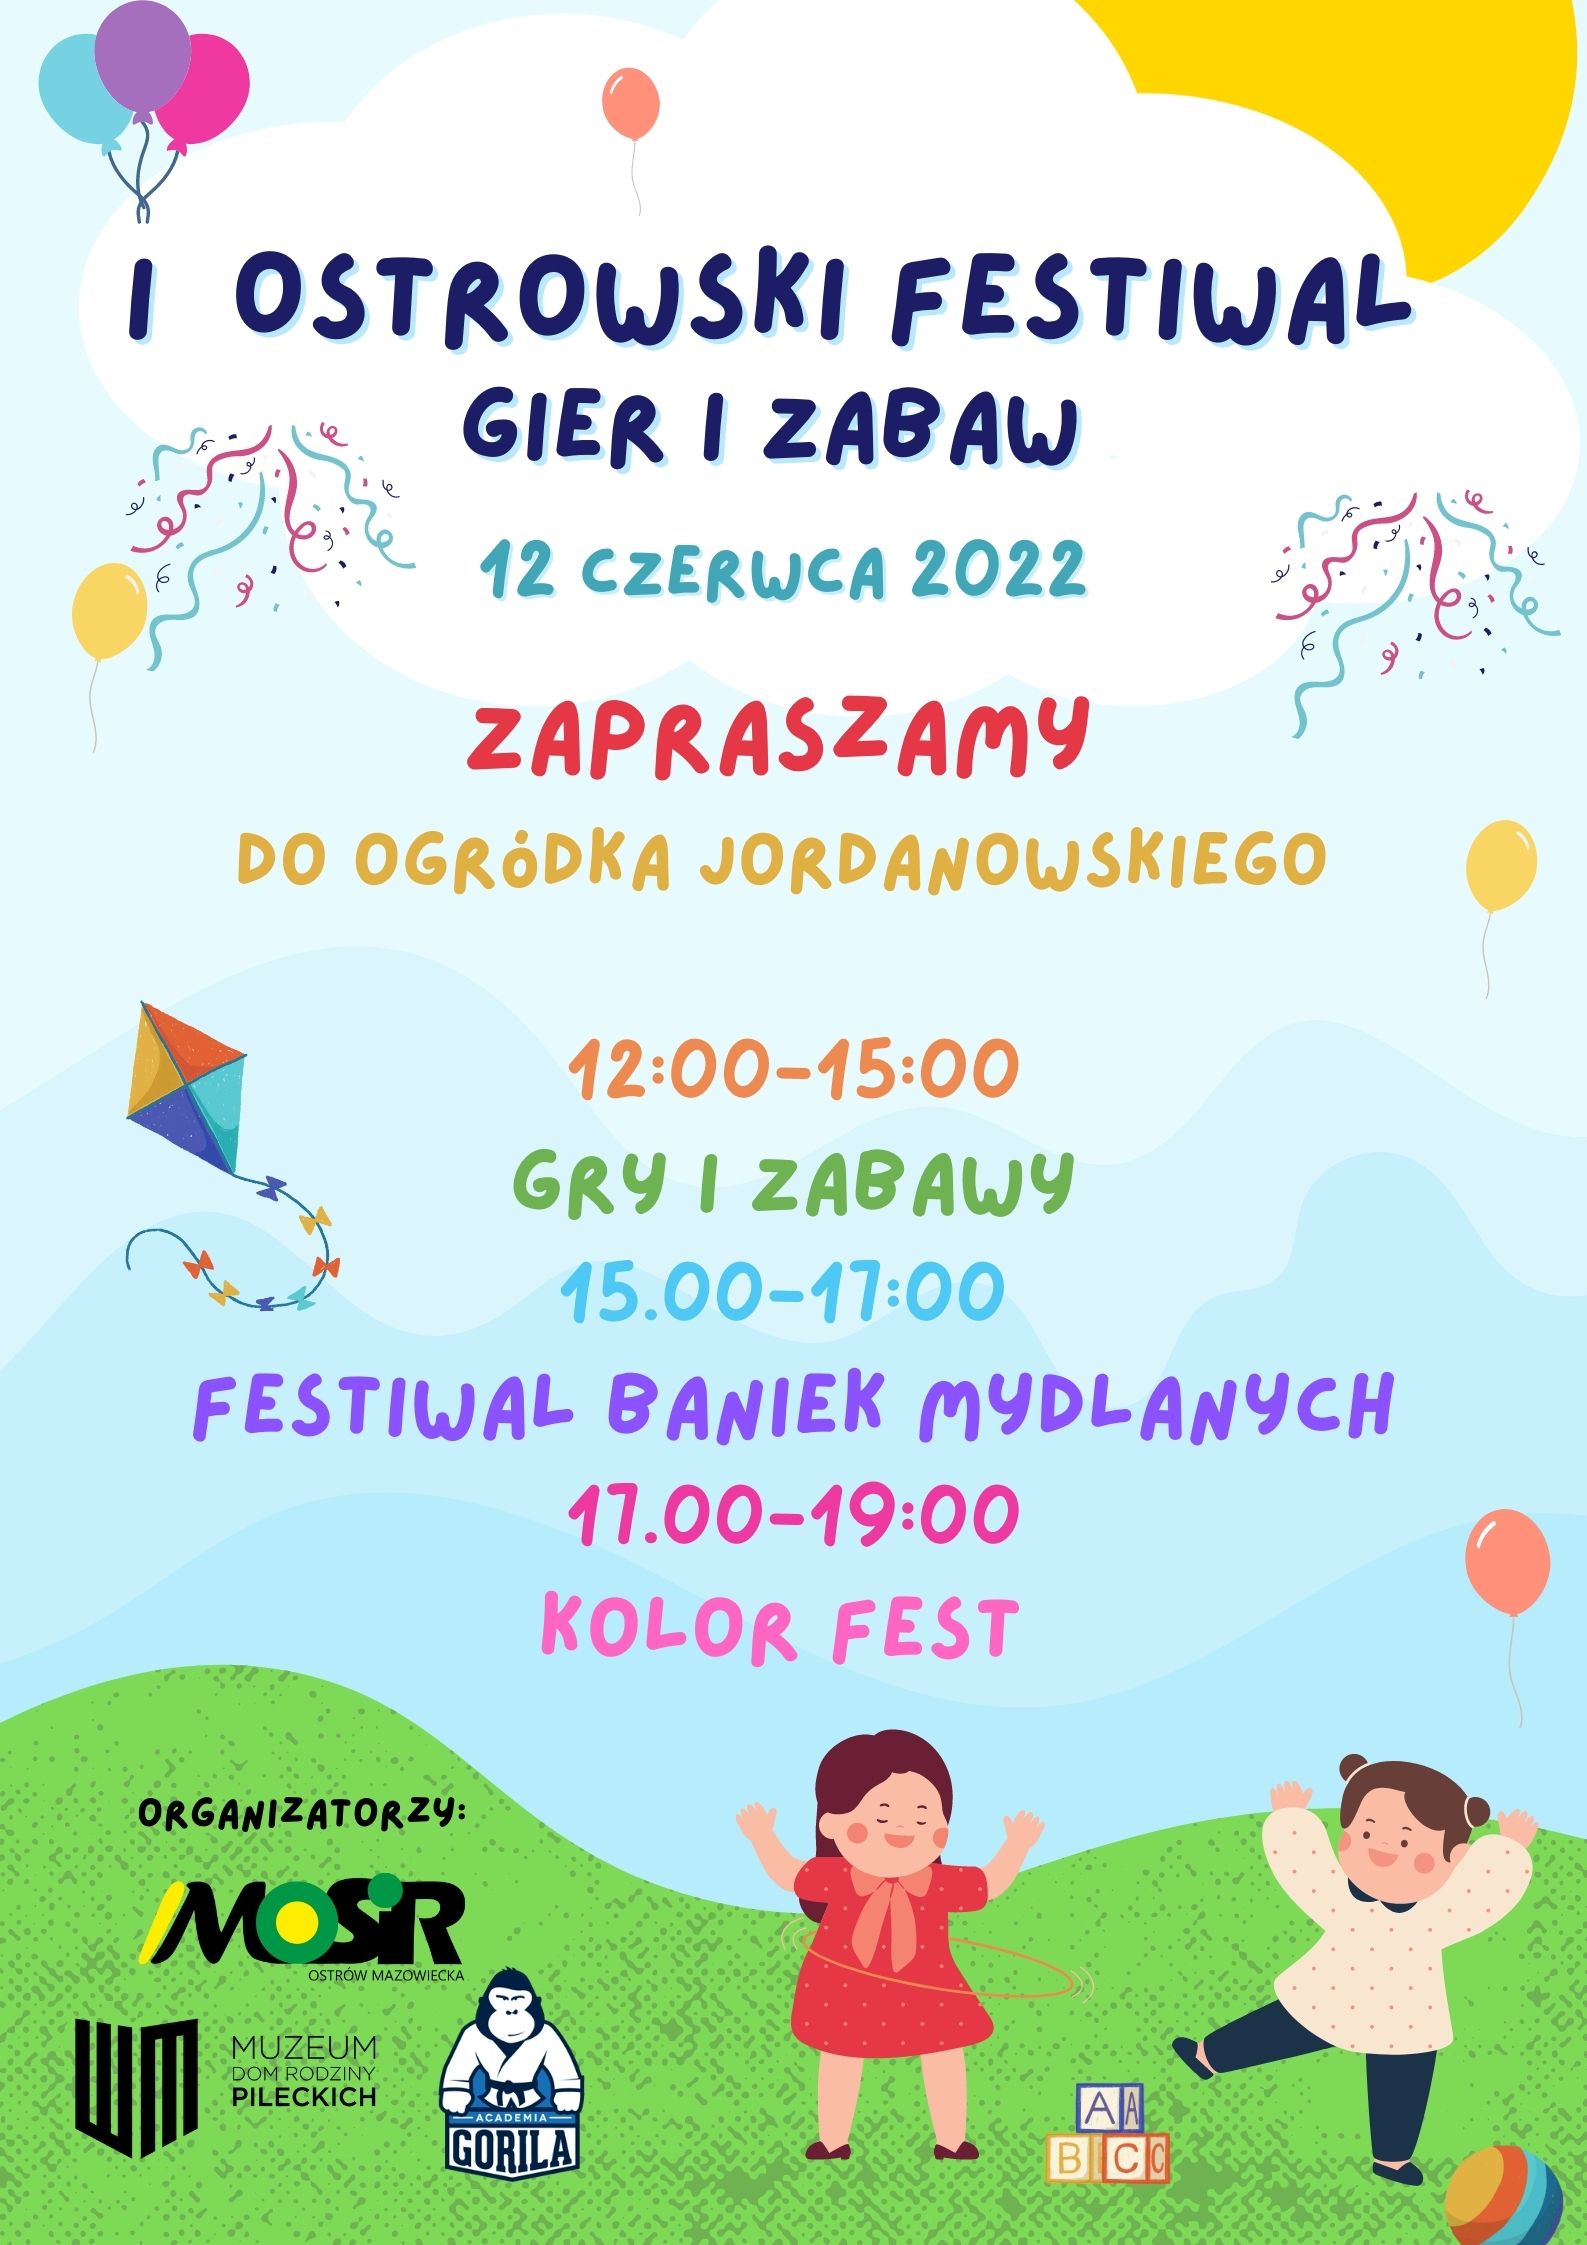 Plakat z informacją o  pierwszym Ostrowskim Festiwalu Gier i Zabaw w ogródku jordanowskim w dniu 12 czerwca, na plakacie postacie dziecięce, balony